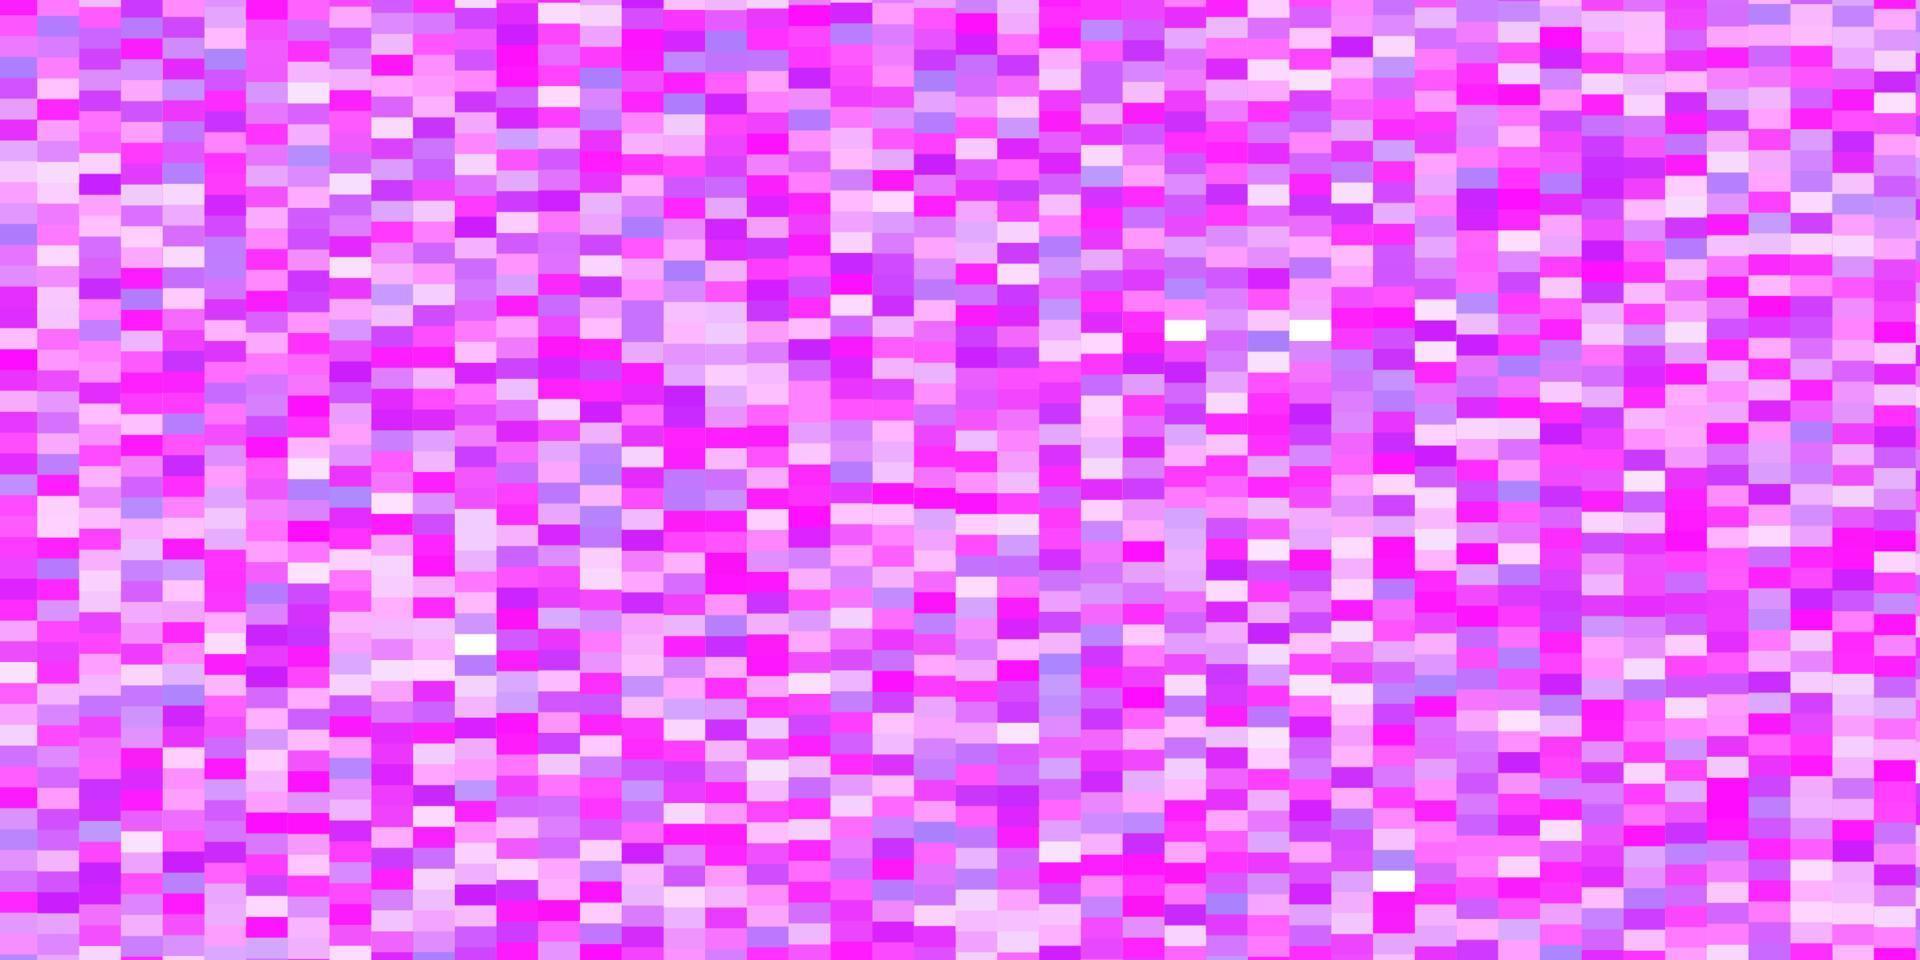 plantilla de vector púrpura claro, rosa en rectángulos.